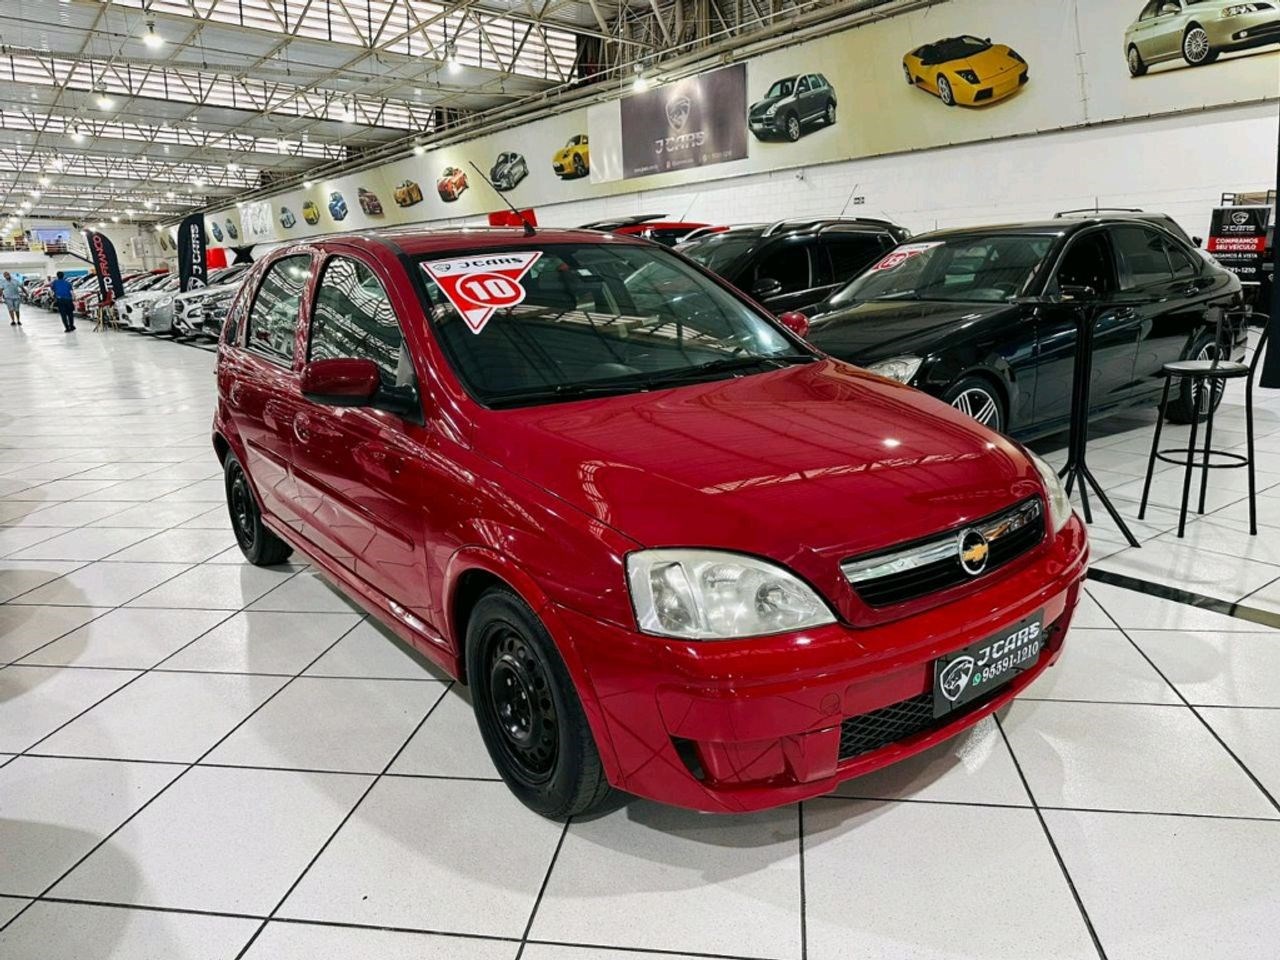 comprar Chevrolet Corsa Hatch em São Paulo - SP